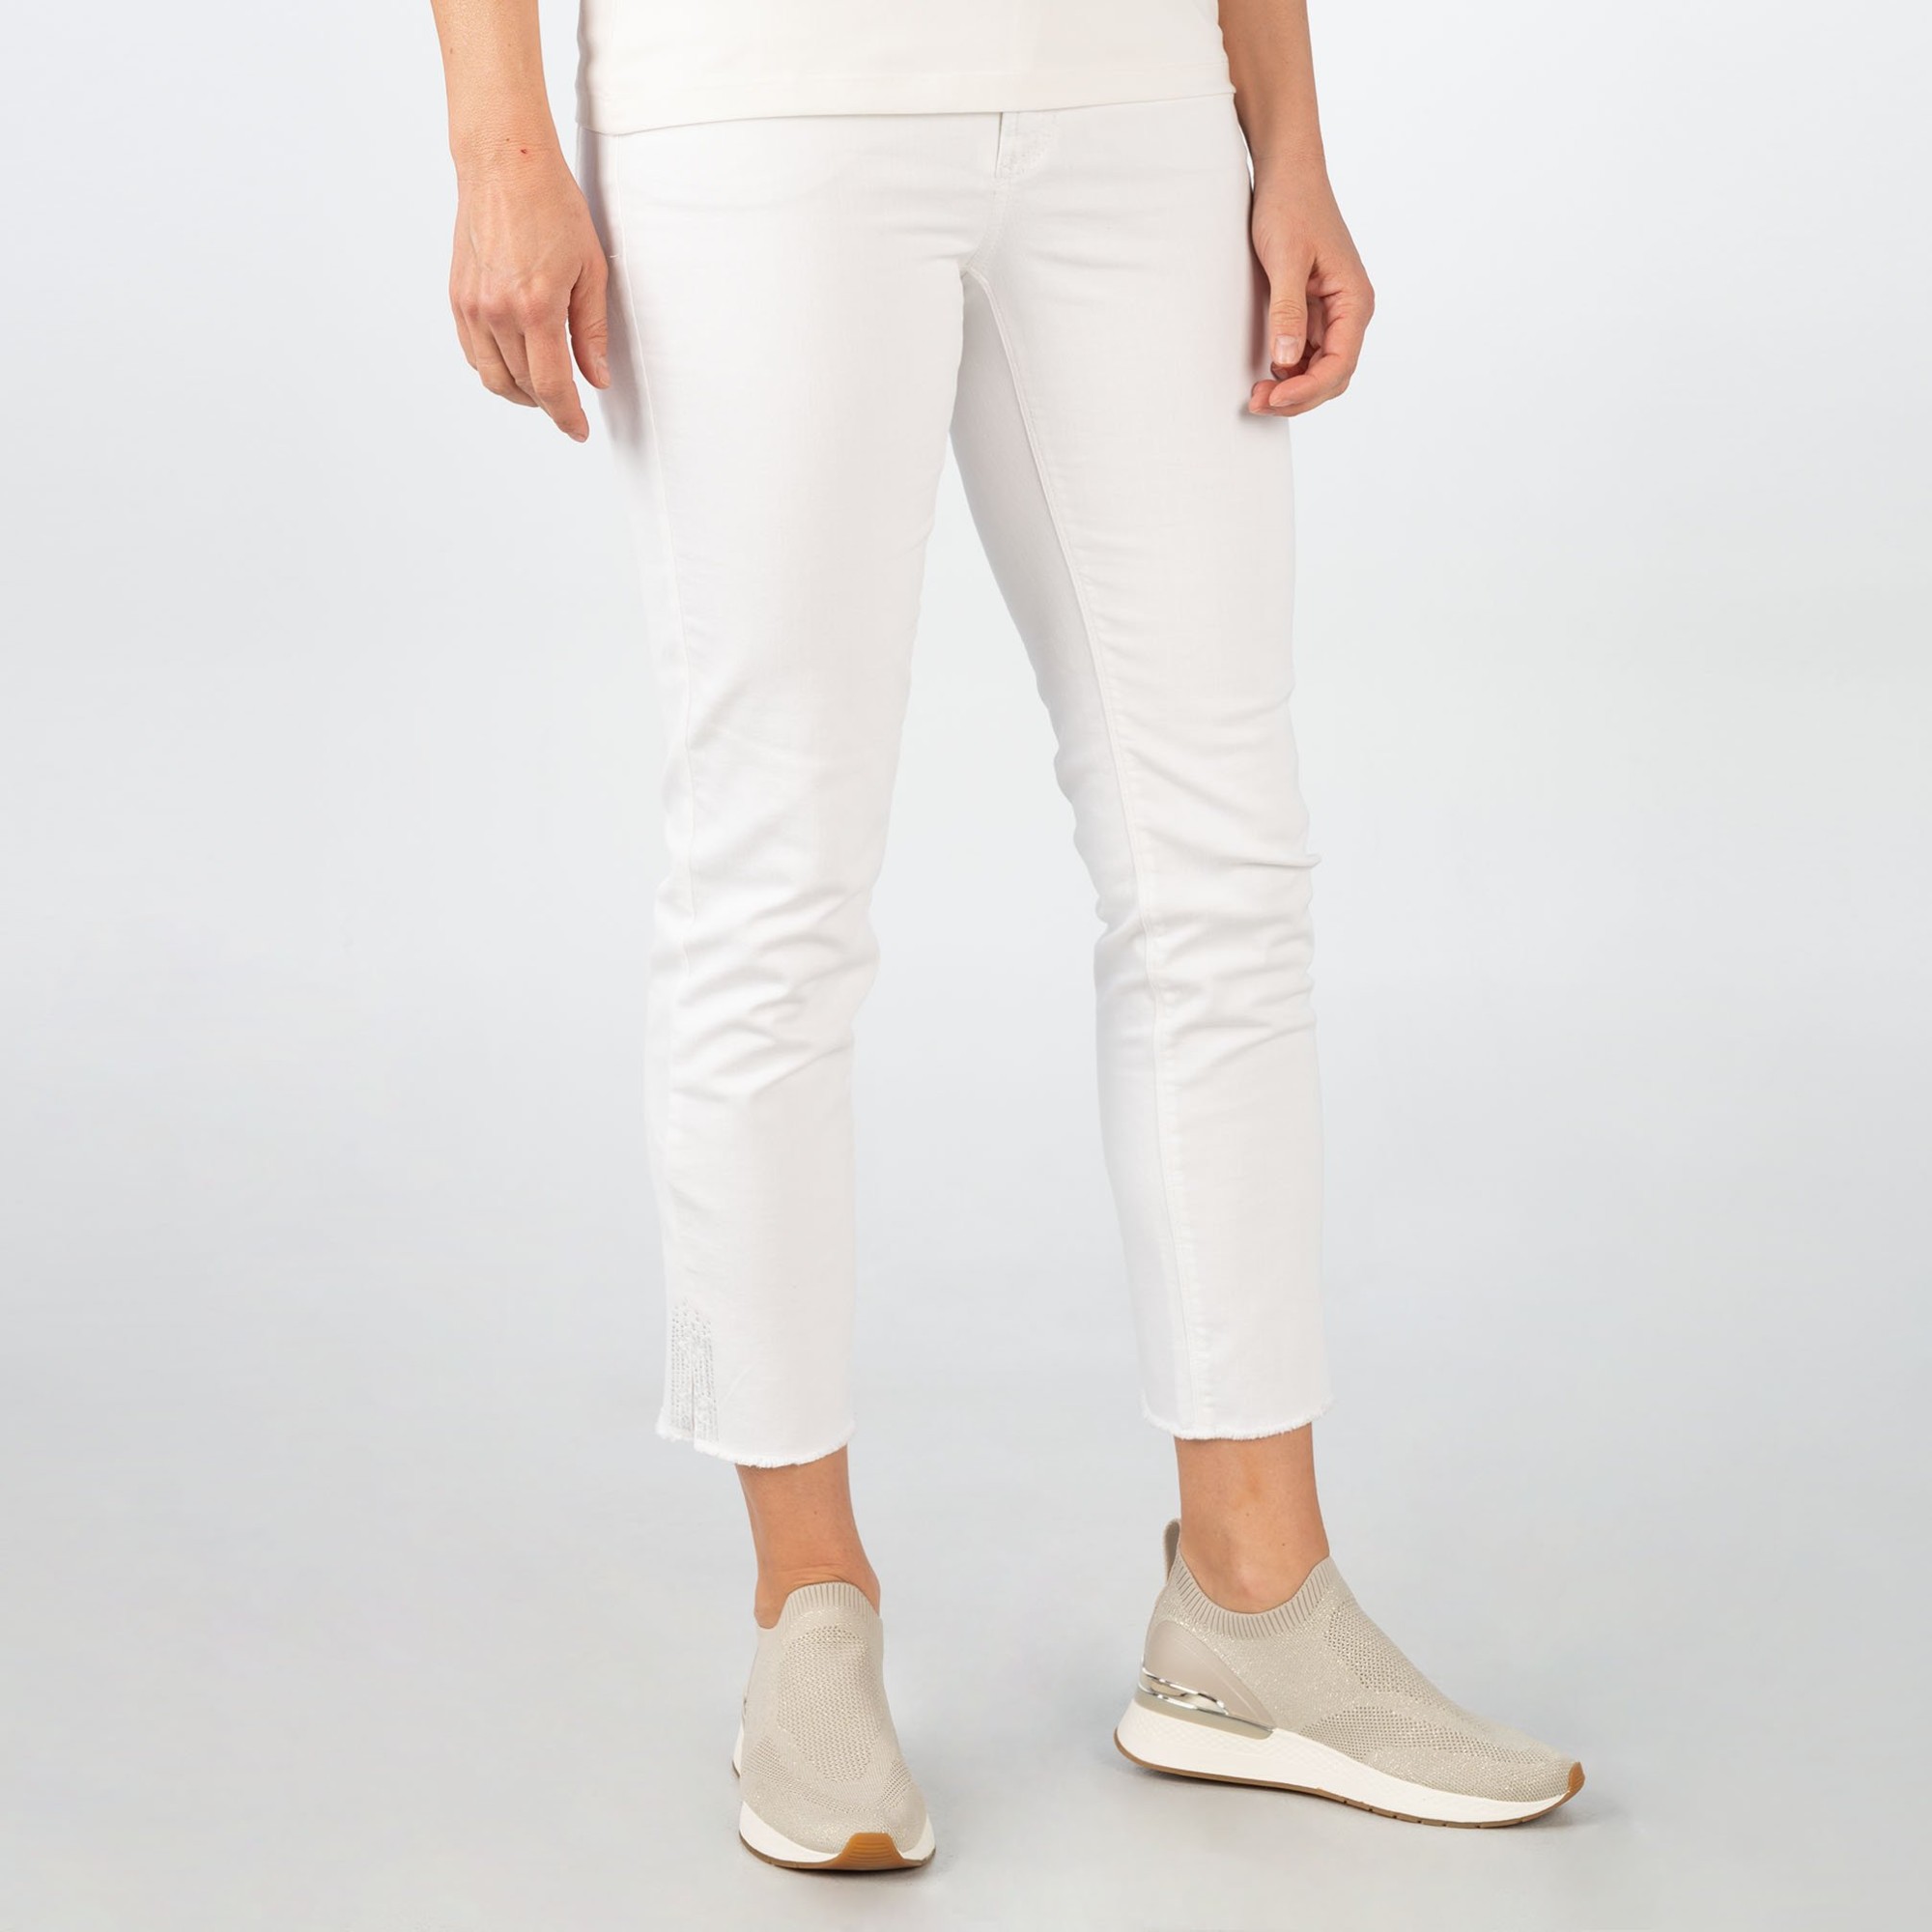 Jeans Slim Fit - Short online im Shop bei meinfischer.de kaufen - Mein